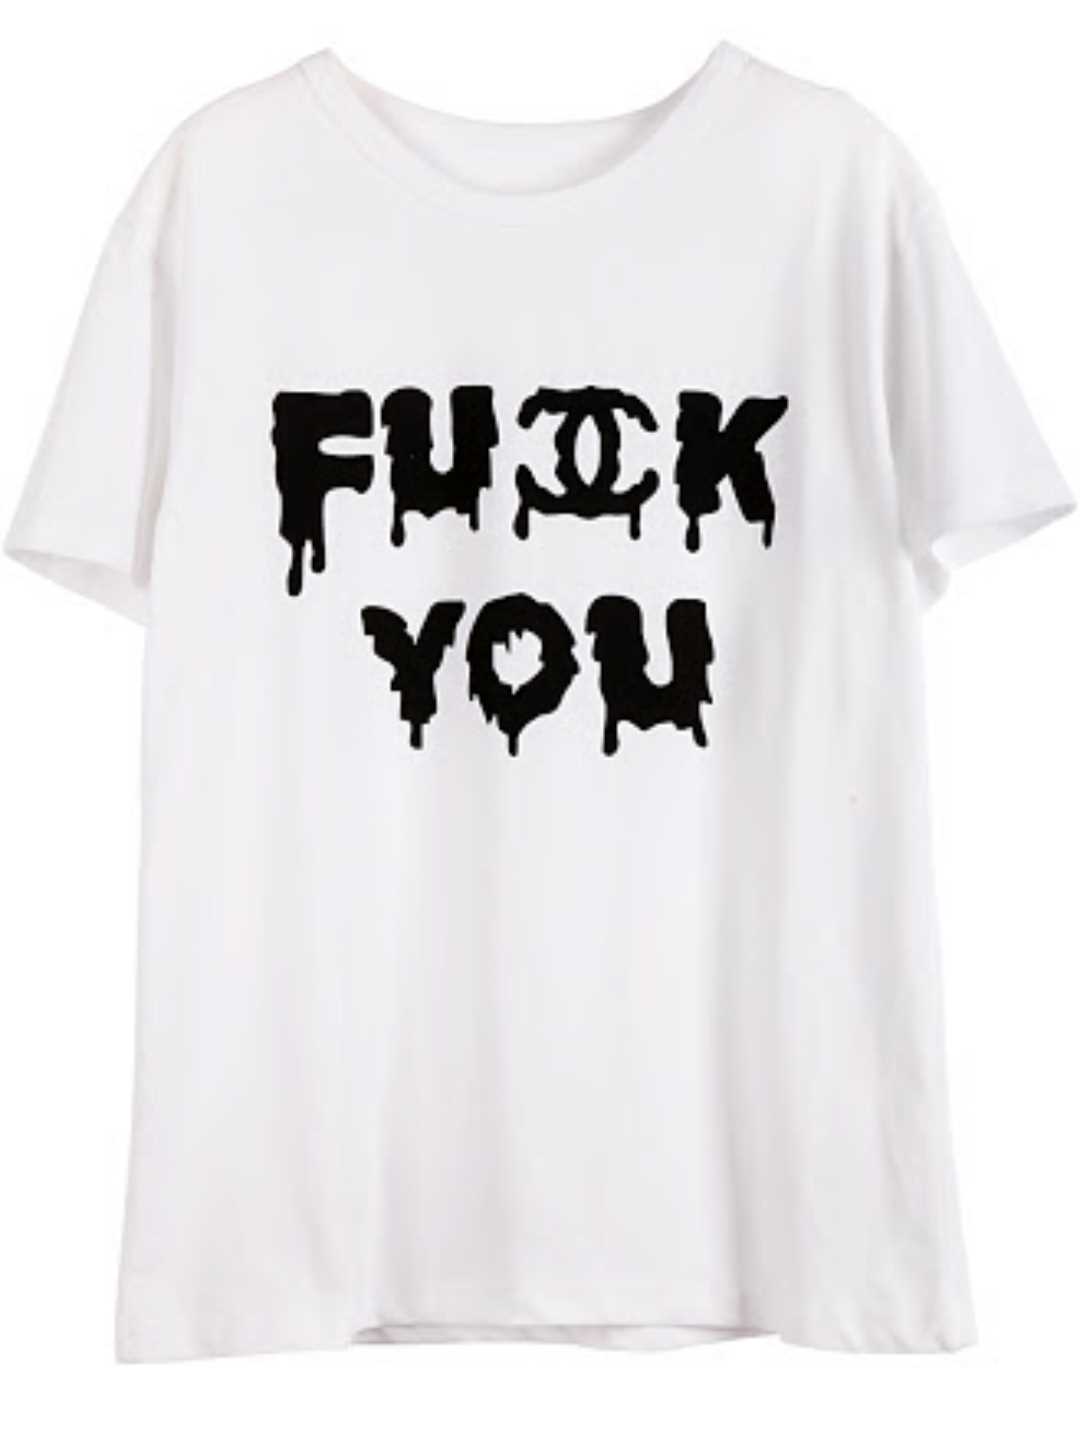 炎上女優・水原希子が「FUCK YOU」Tシャツを着た写真を公開し騒動に。（画像あり） - 芸能人・俳優・女優・お笑い芸人の話題